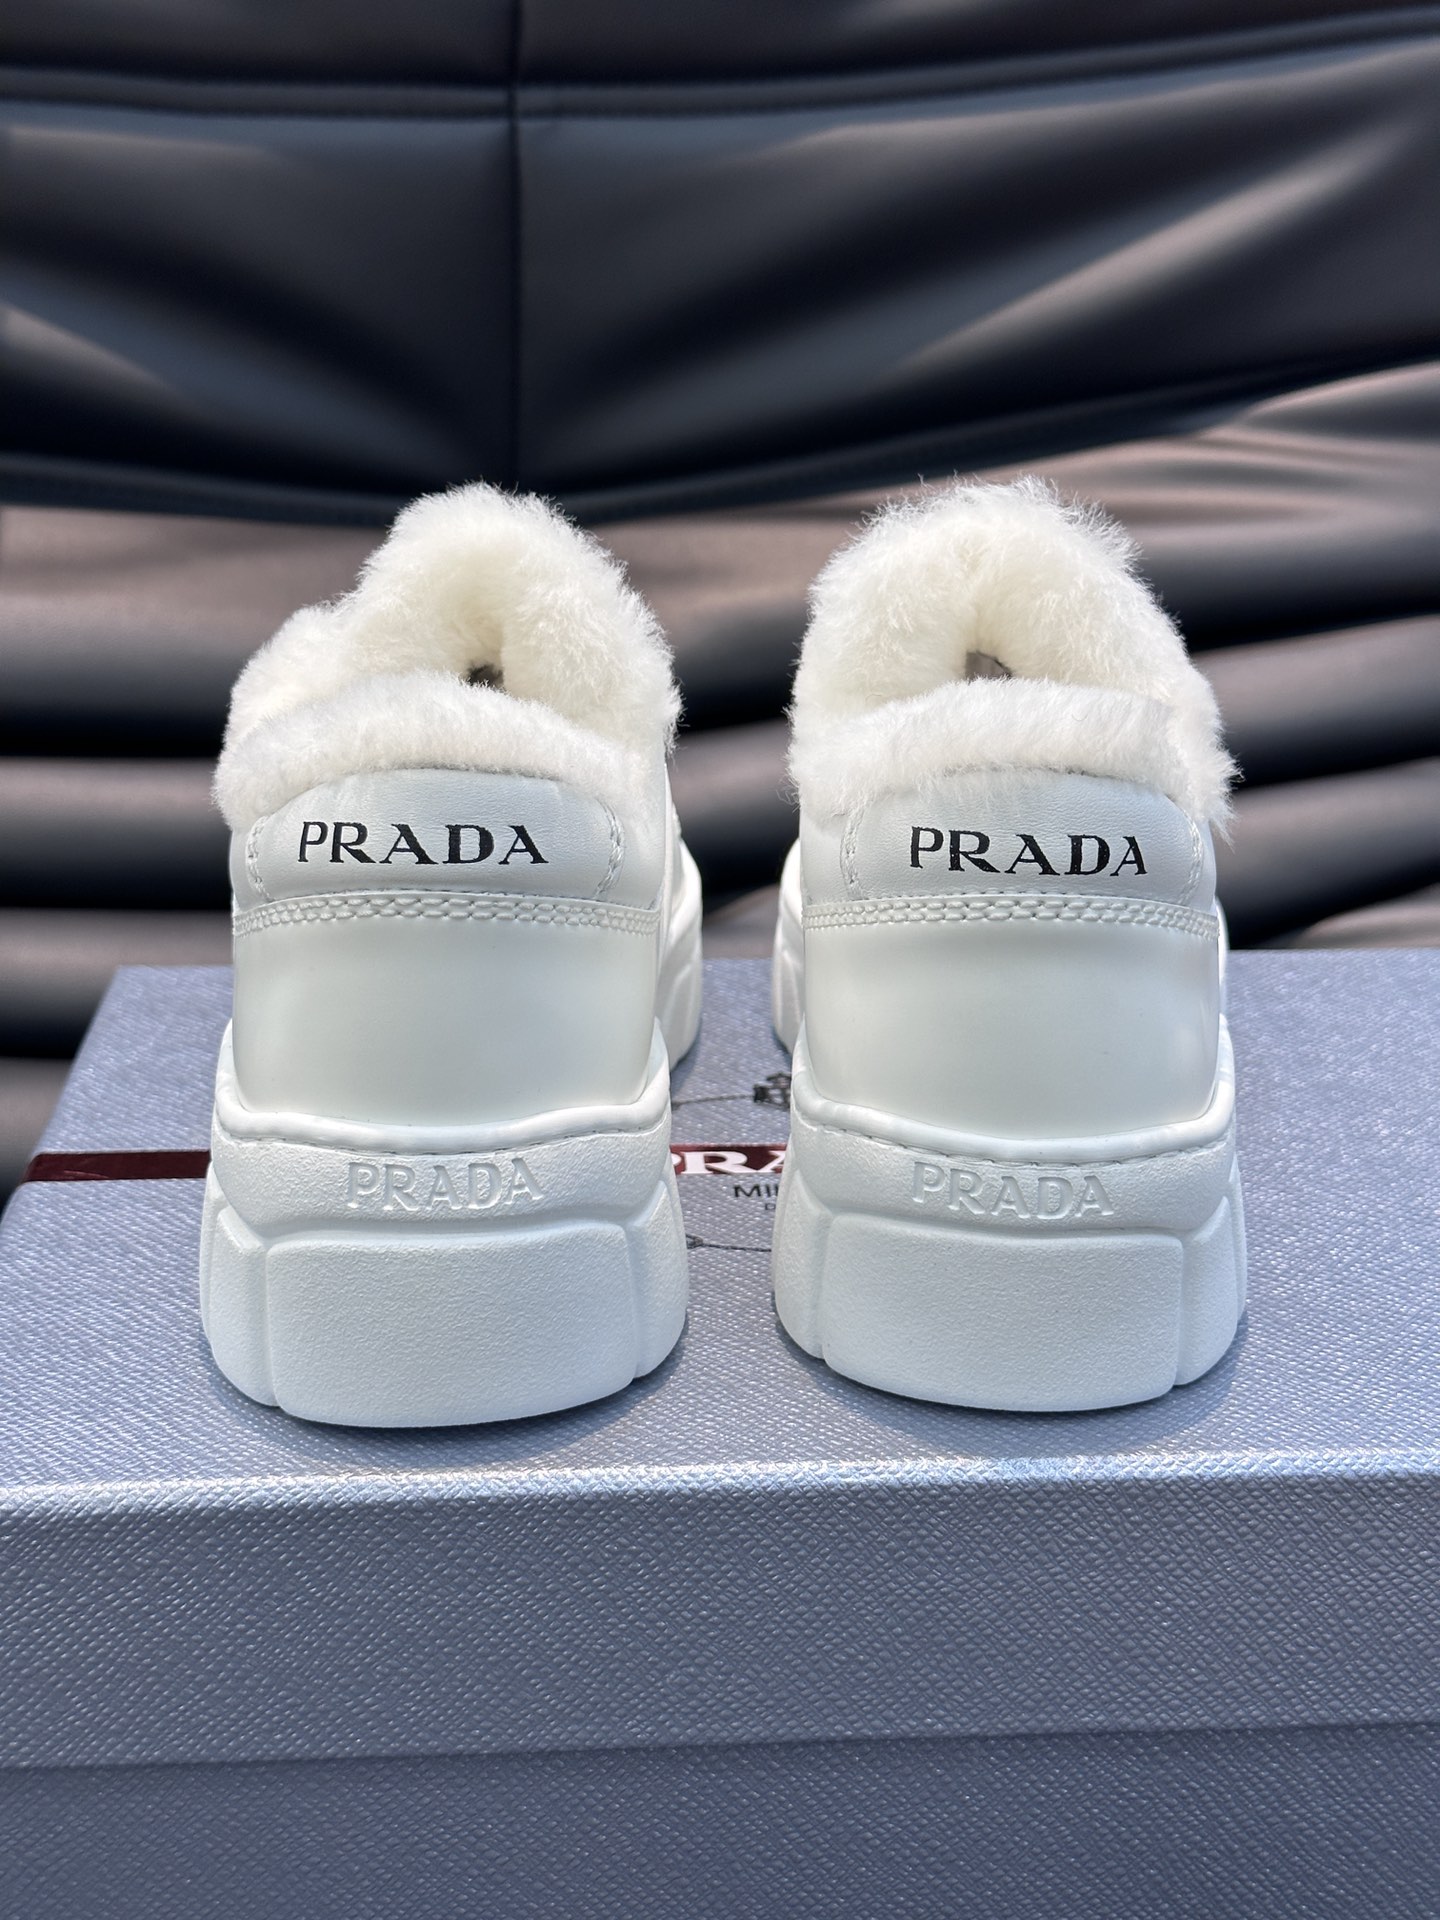 Prad*/普拉达女士厚底低帮休闲运动鞋羊毛鞋每一双都是精心打造细节完美复刻原版采用纳帕牛皮加雾面牛皮拼